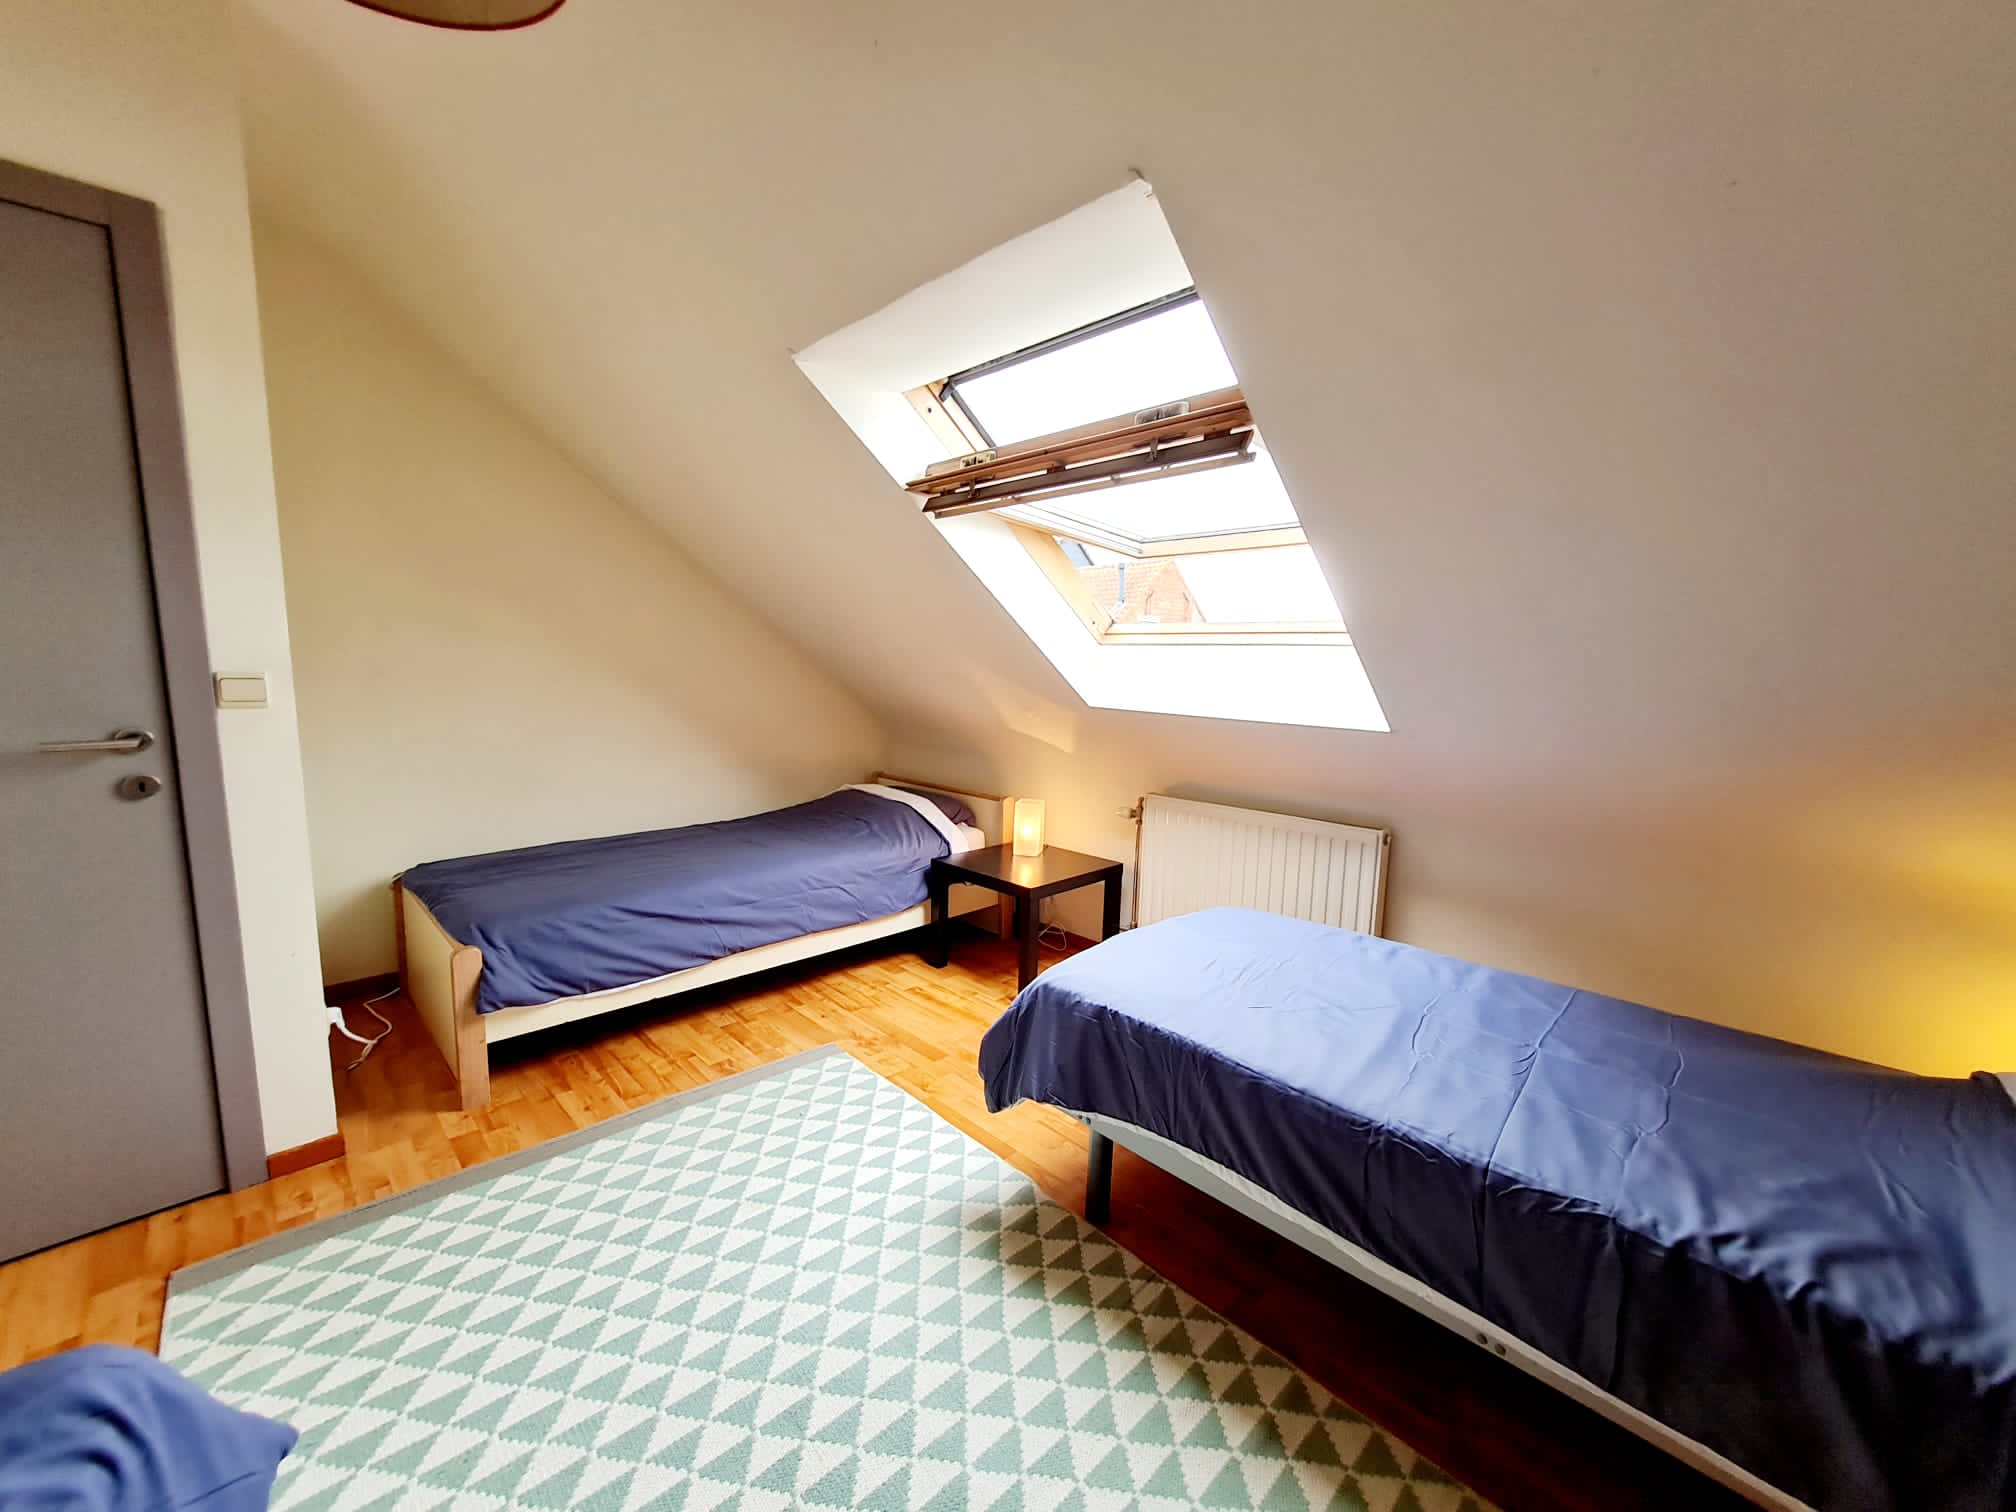 Kieldrecht 16 - Fully equipped flat for rent near Antwerp